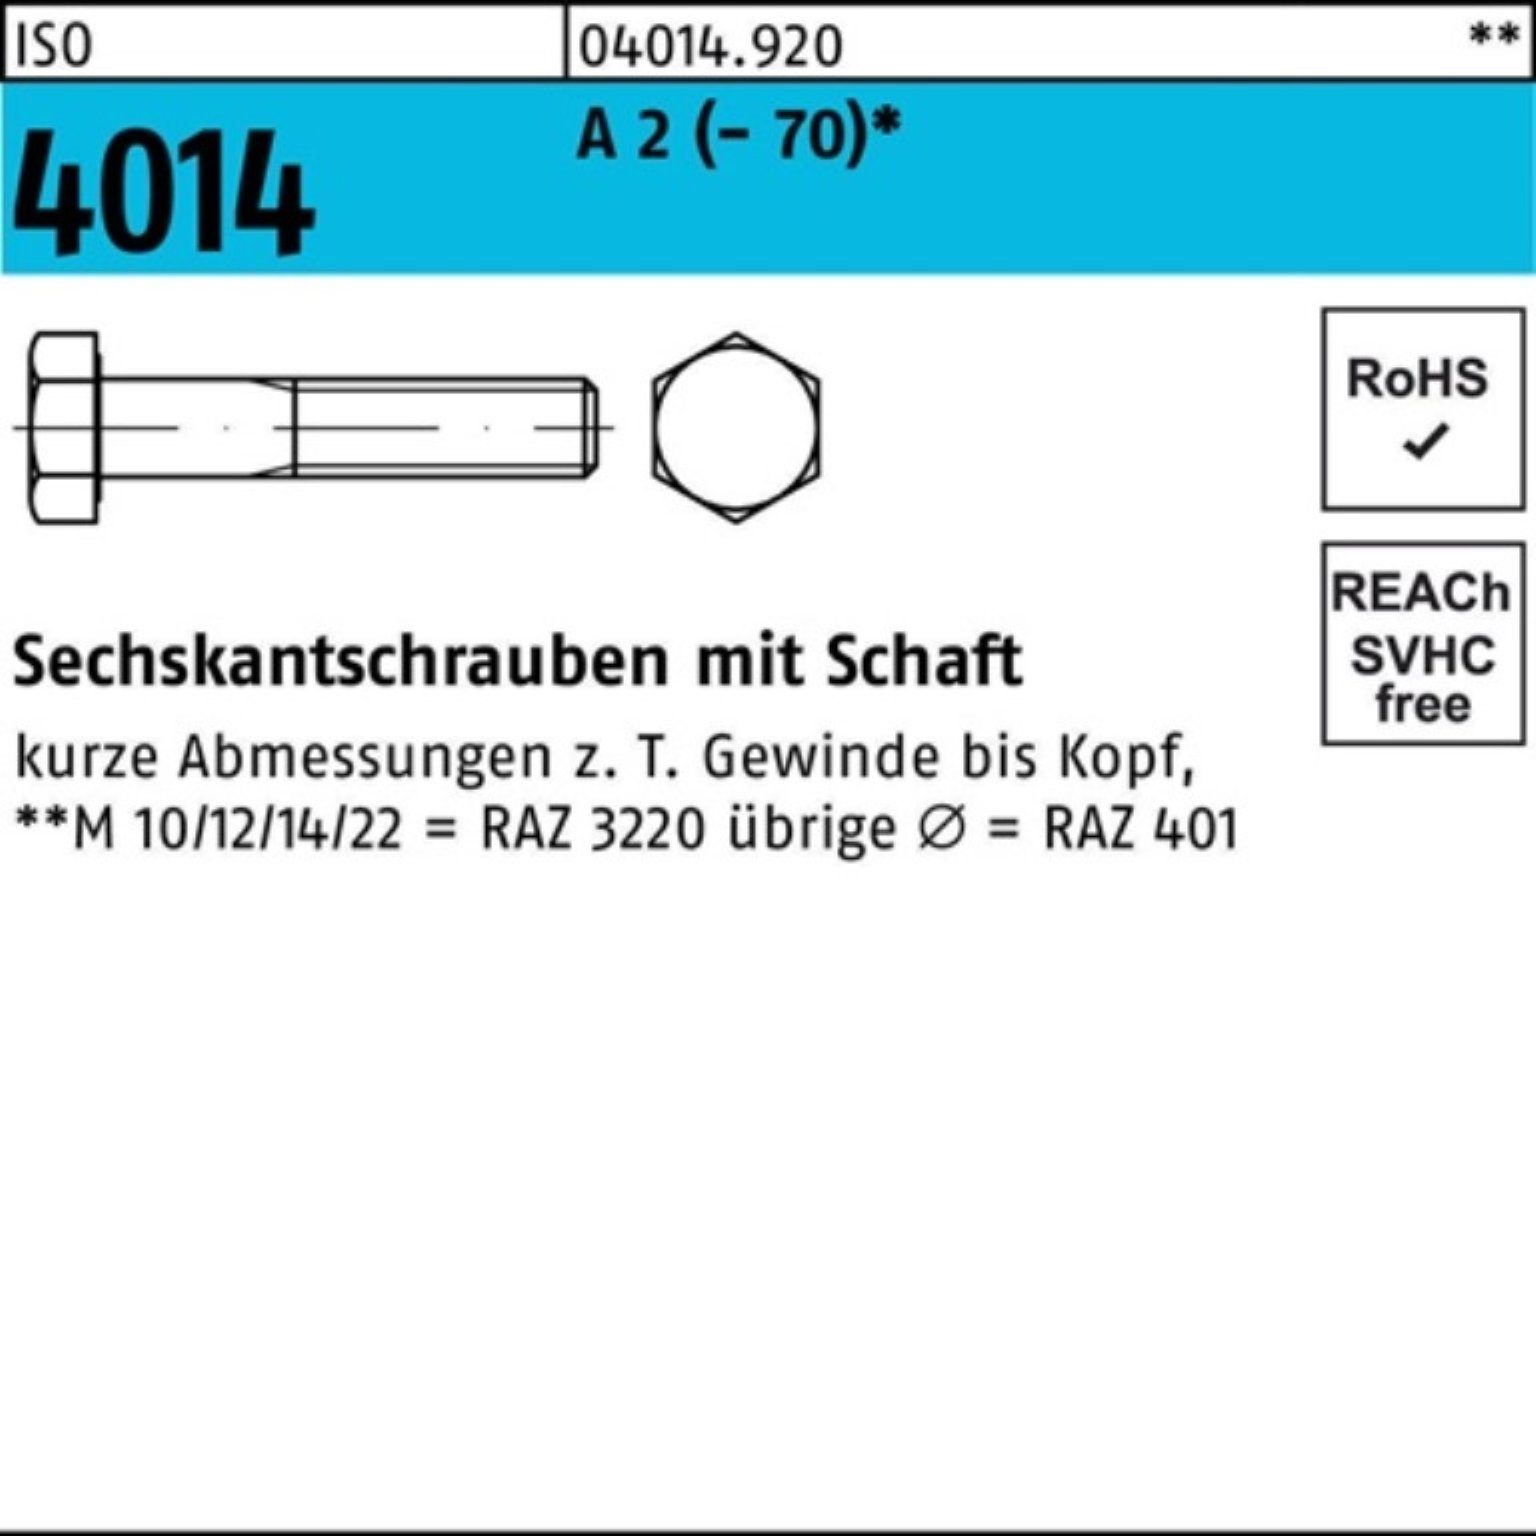 Bufab Sechskantschraube 100er Pack Sechskantschraube ISO 4014 Schaft M22x 140 A 2 (70) 1 St